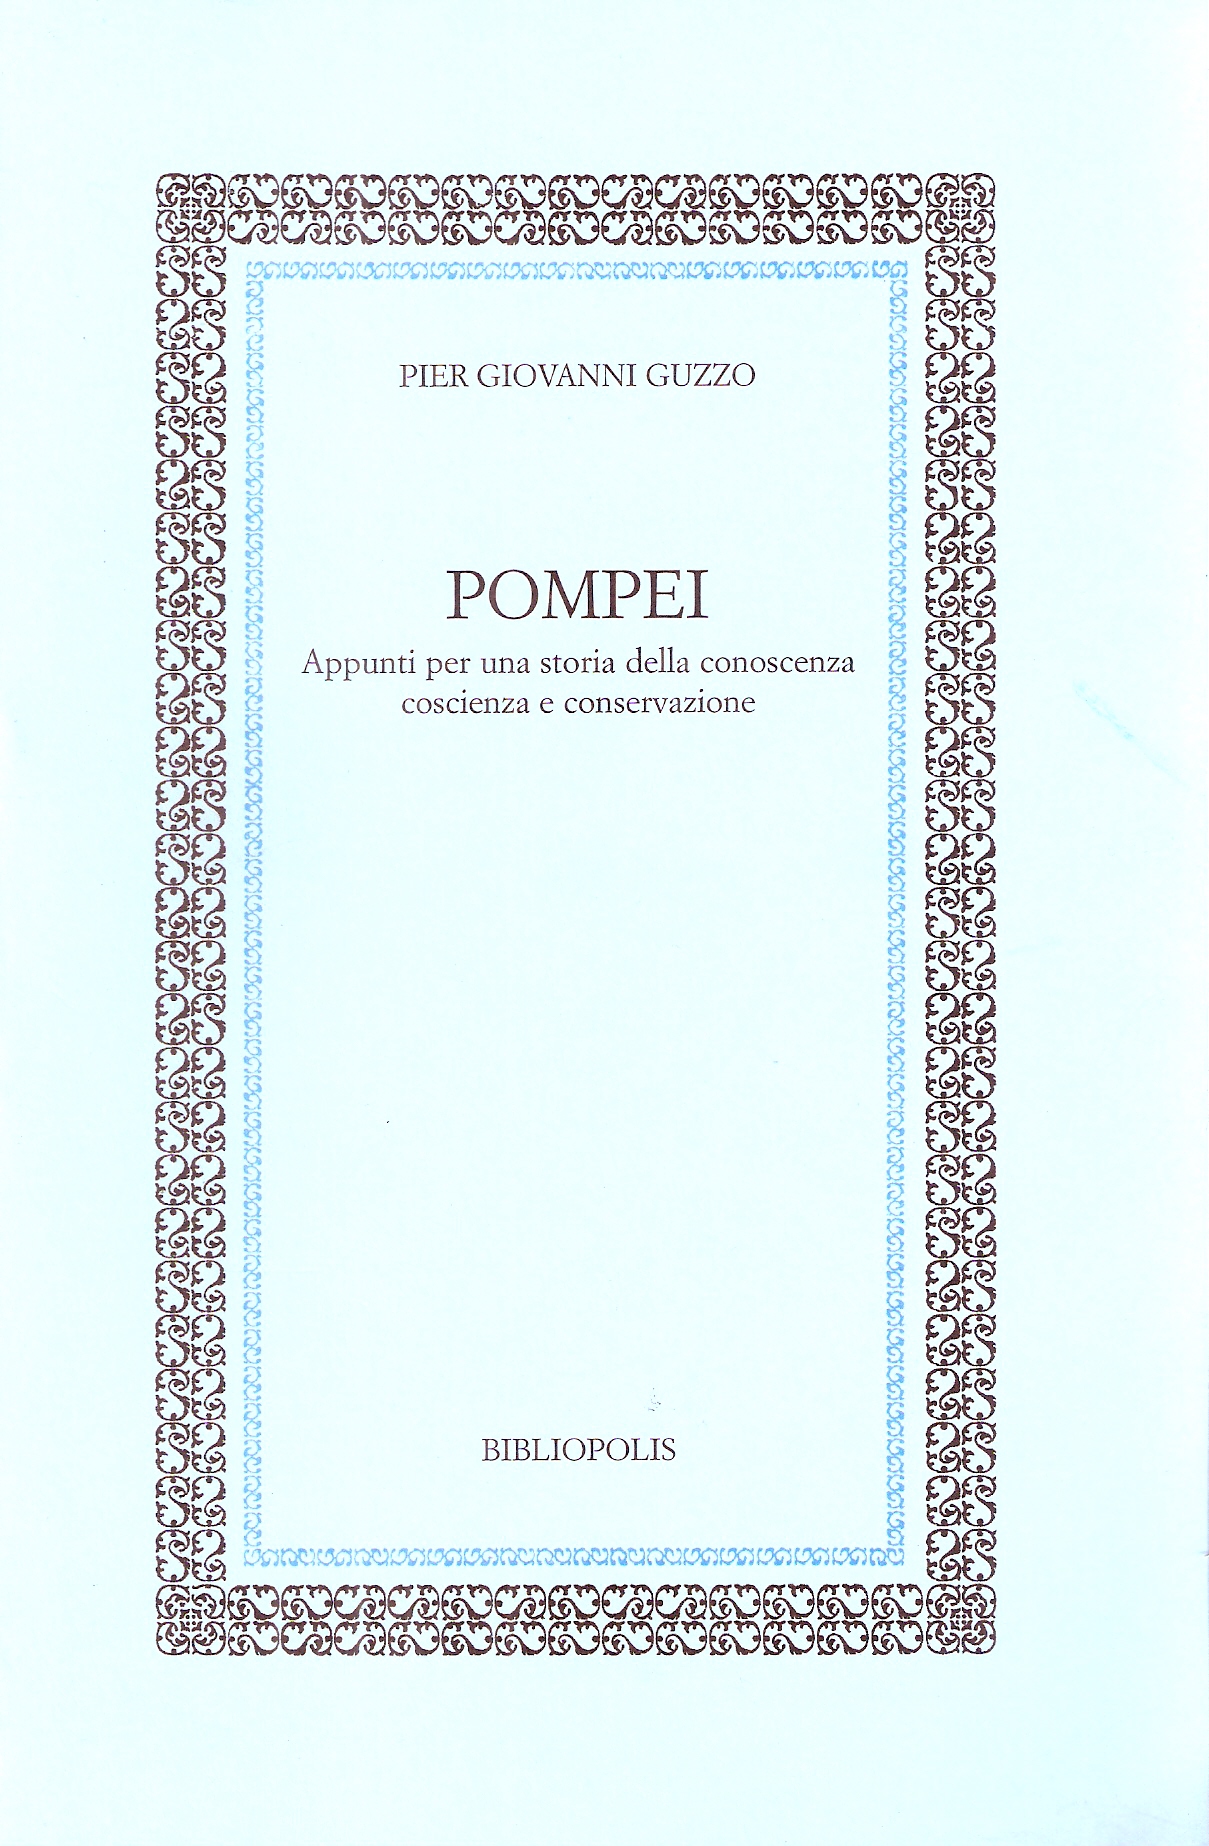 Pompei, appunti per una storia della conoscenza coscienza e conservazione